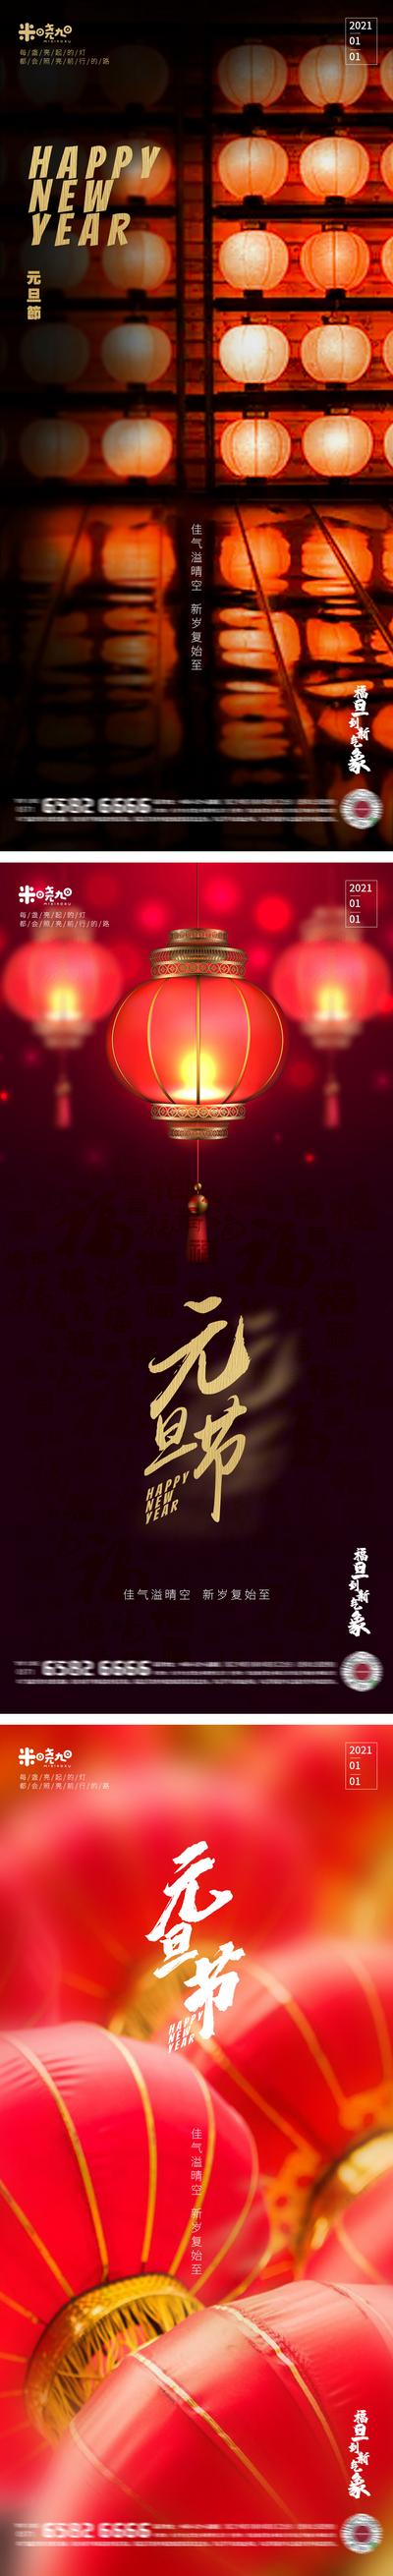 南门网 广告 海报 系列 元旦 灯笼 传统节日 喜庆 红色